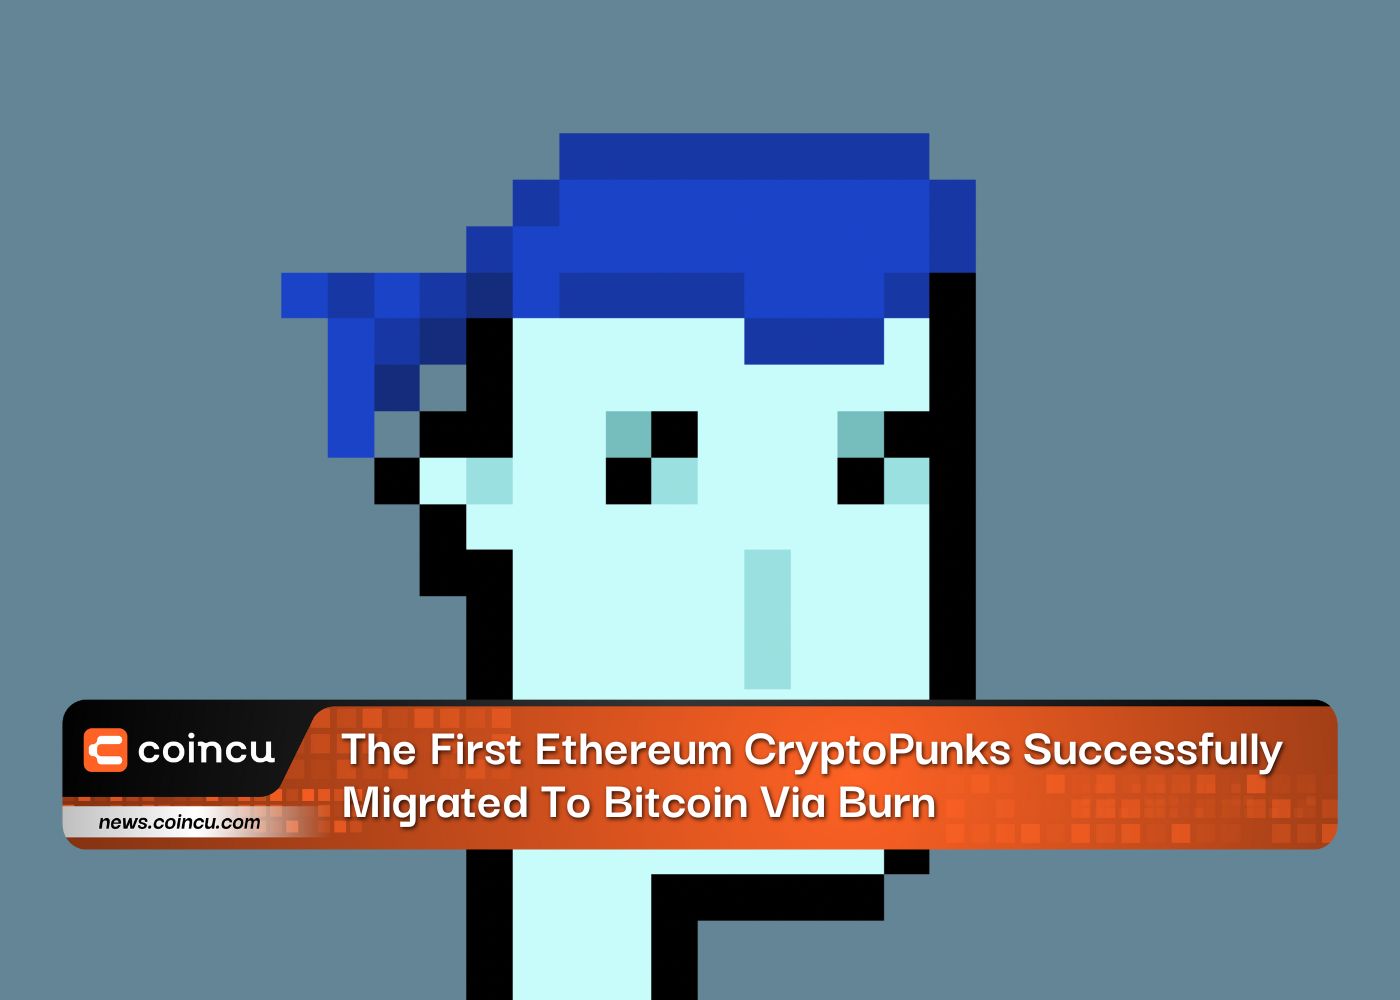 Los primeros CryptoPunks de Ethereum migraron con éxito a Bitcoin a través de Burn